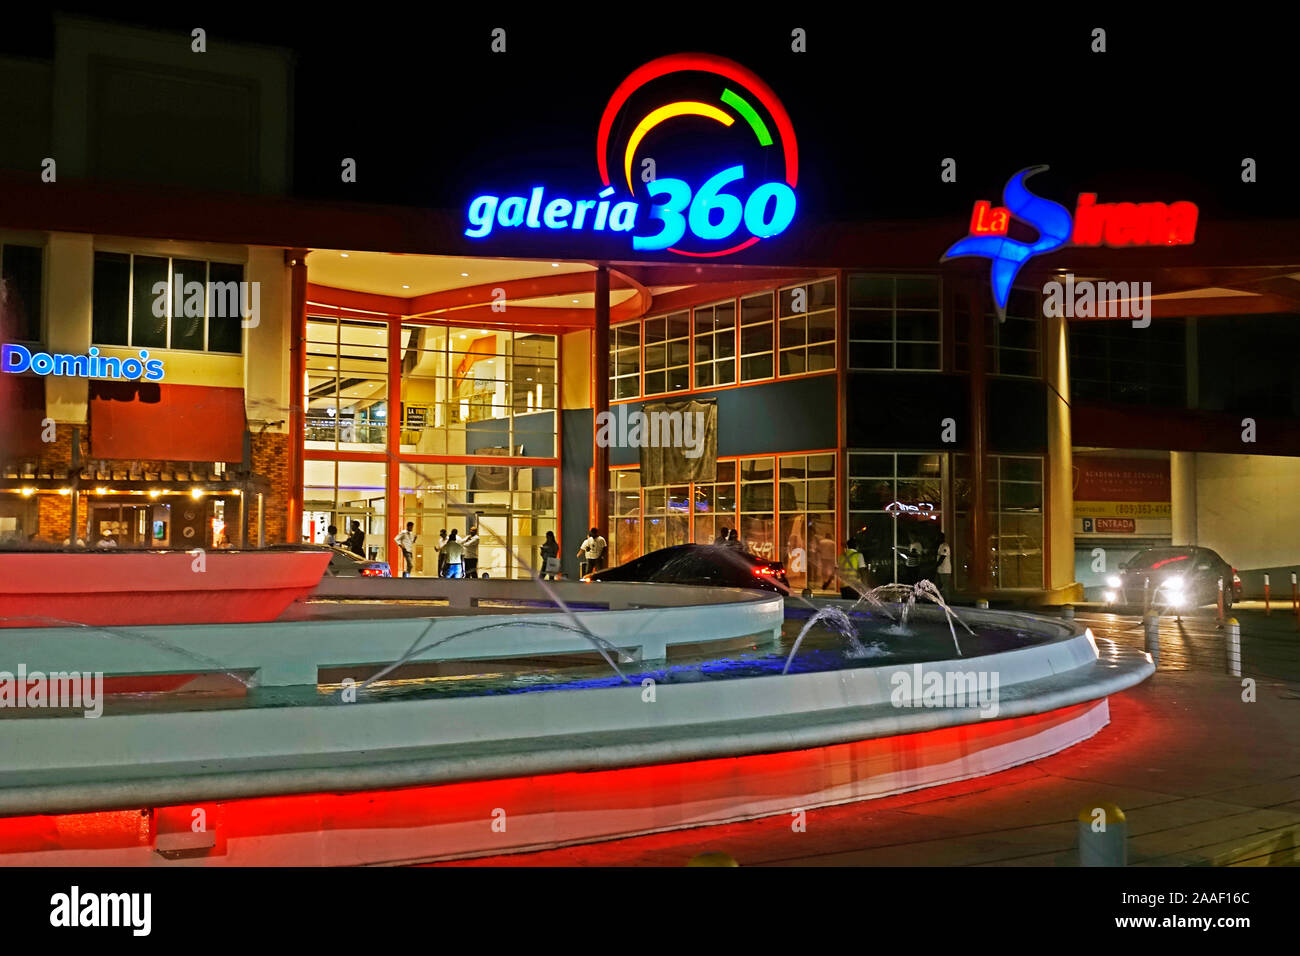 Galeria 360 shopping plaza in Santo Domingo Dominican Republic Stock Photo